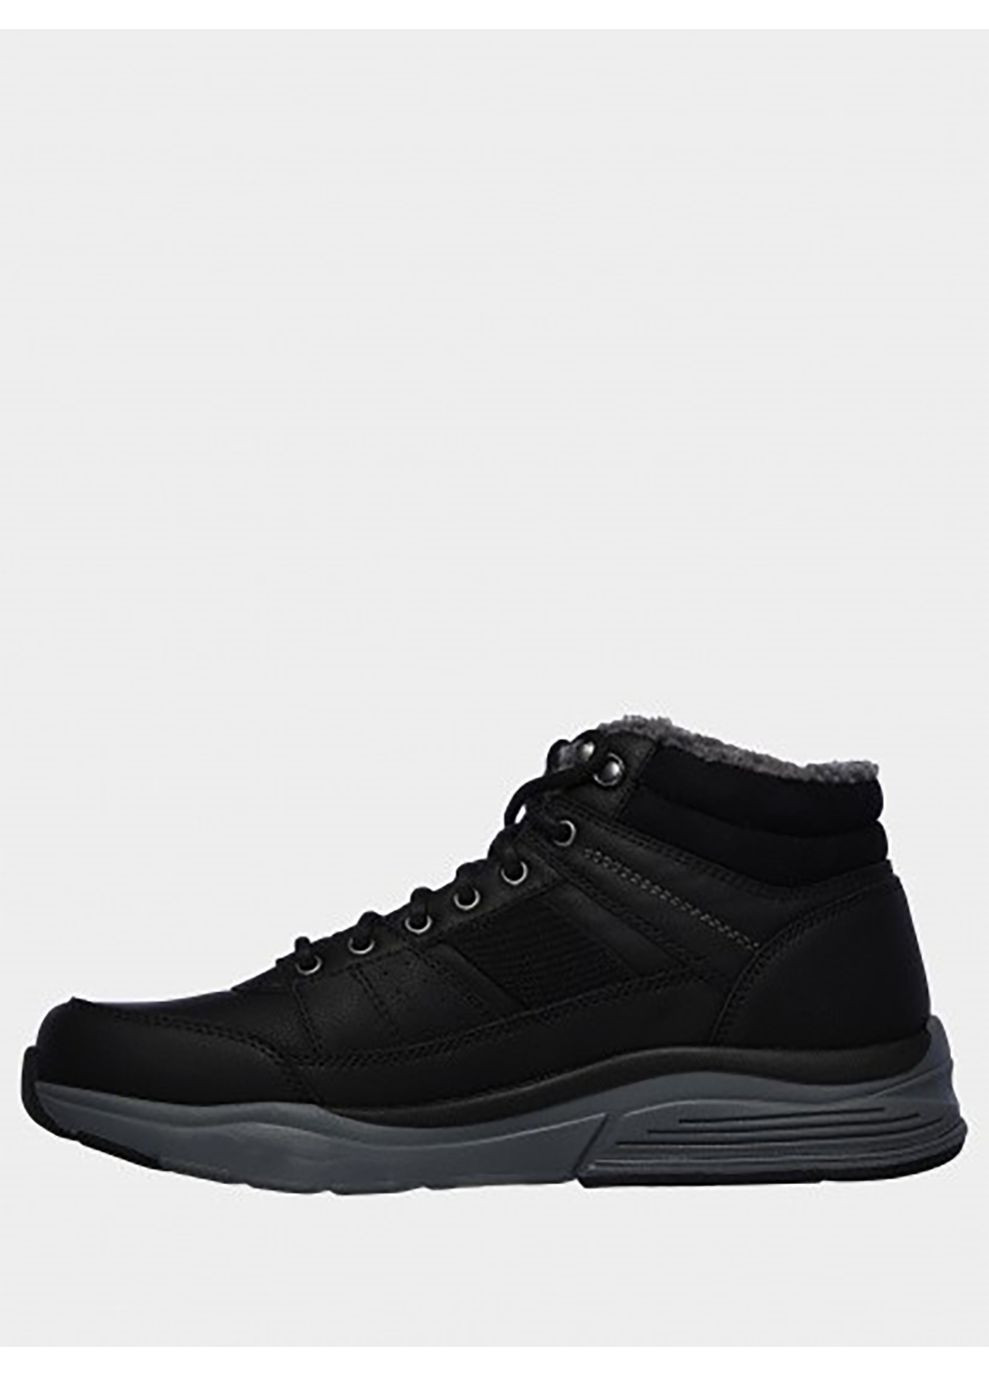 Черные осенние ботинки 66199 blk черный Skechers